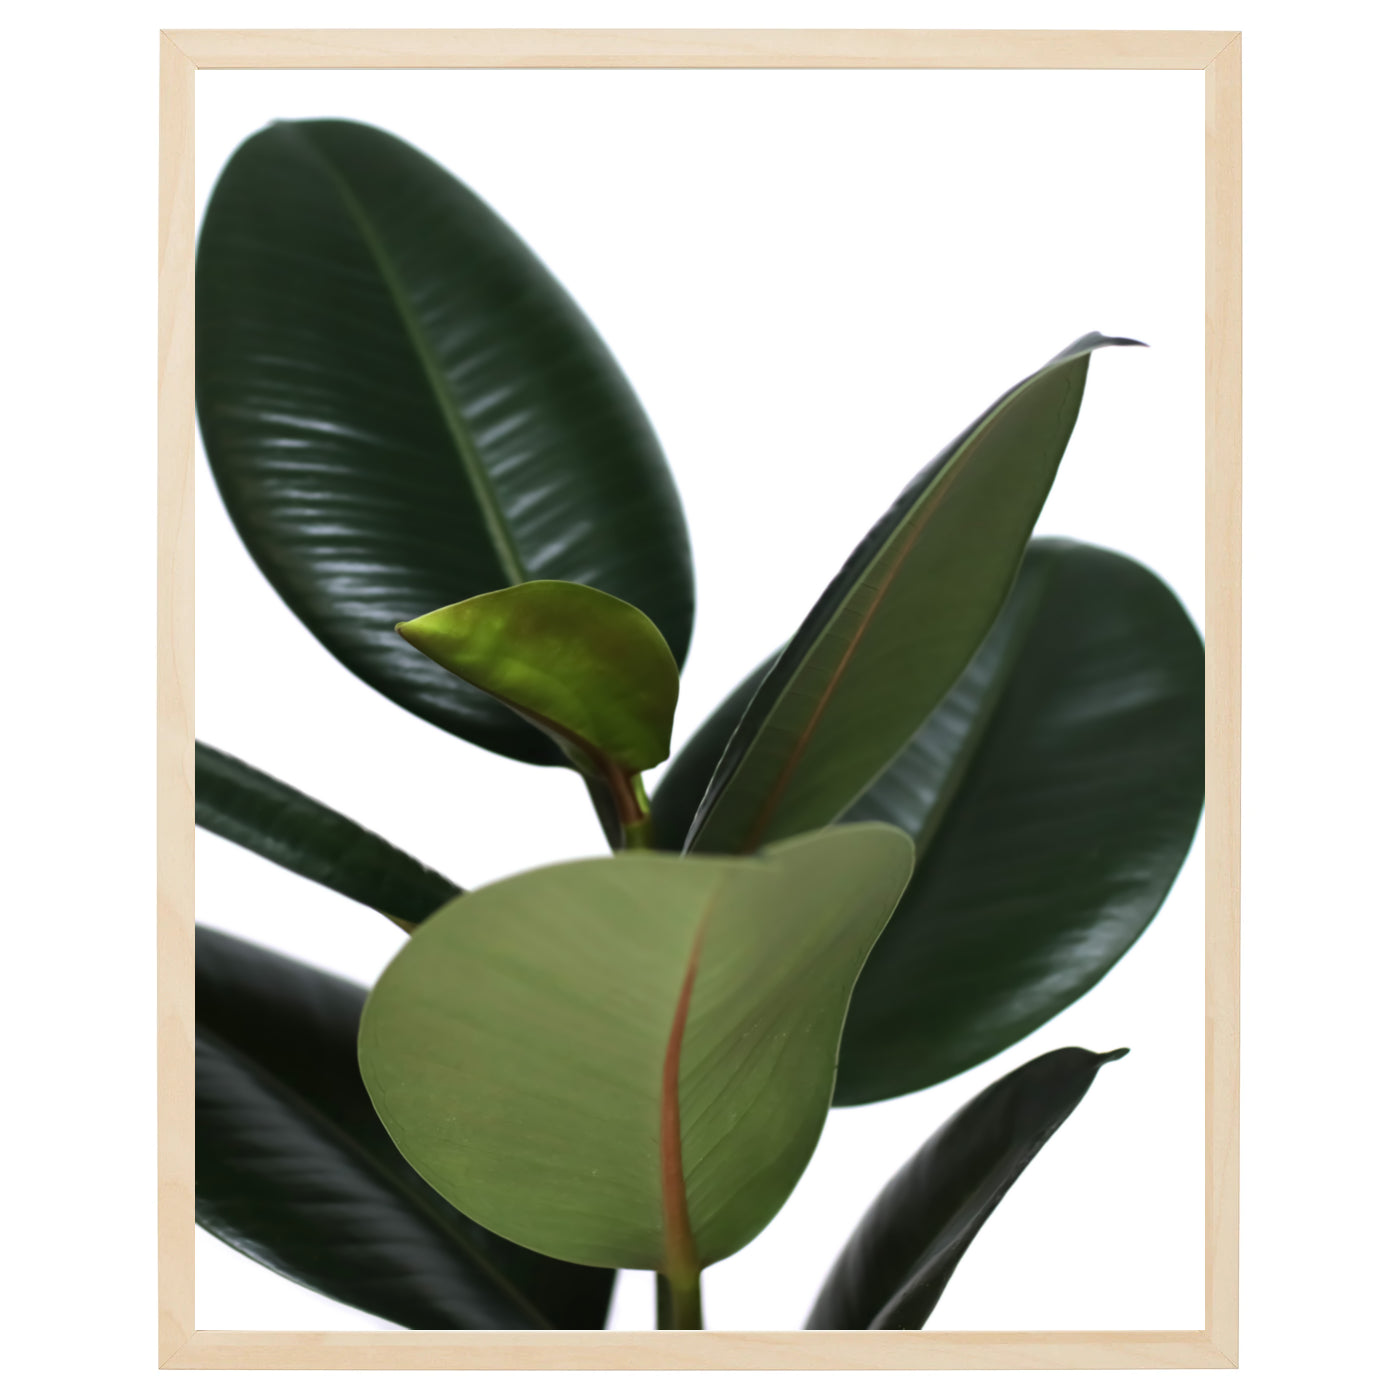 En plakat med grønne blade fra en ficus plante på en lys baggrund. Bladene har en mørk grøn farve og er tæt siddende på plakaten, hvilket skaber en følelse af ro og balance. Den lyse baggrund giver plakaten en frisk, luftig fornemmelse.